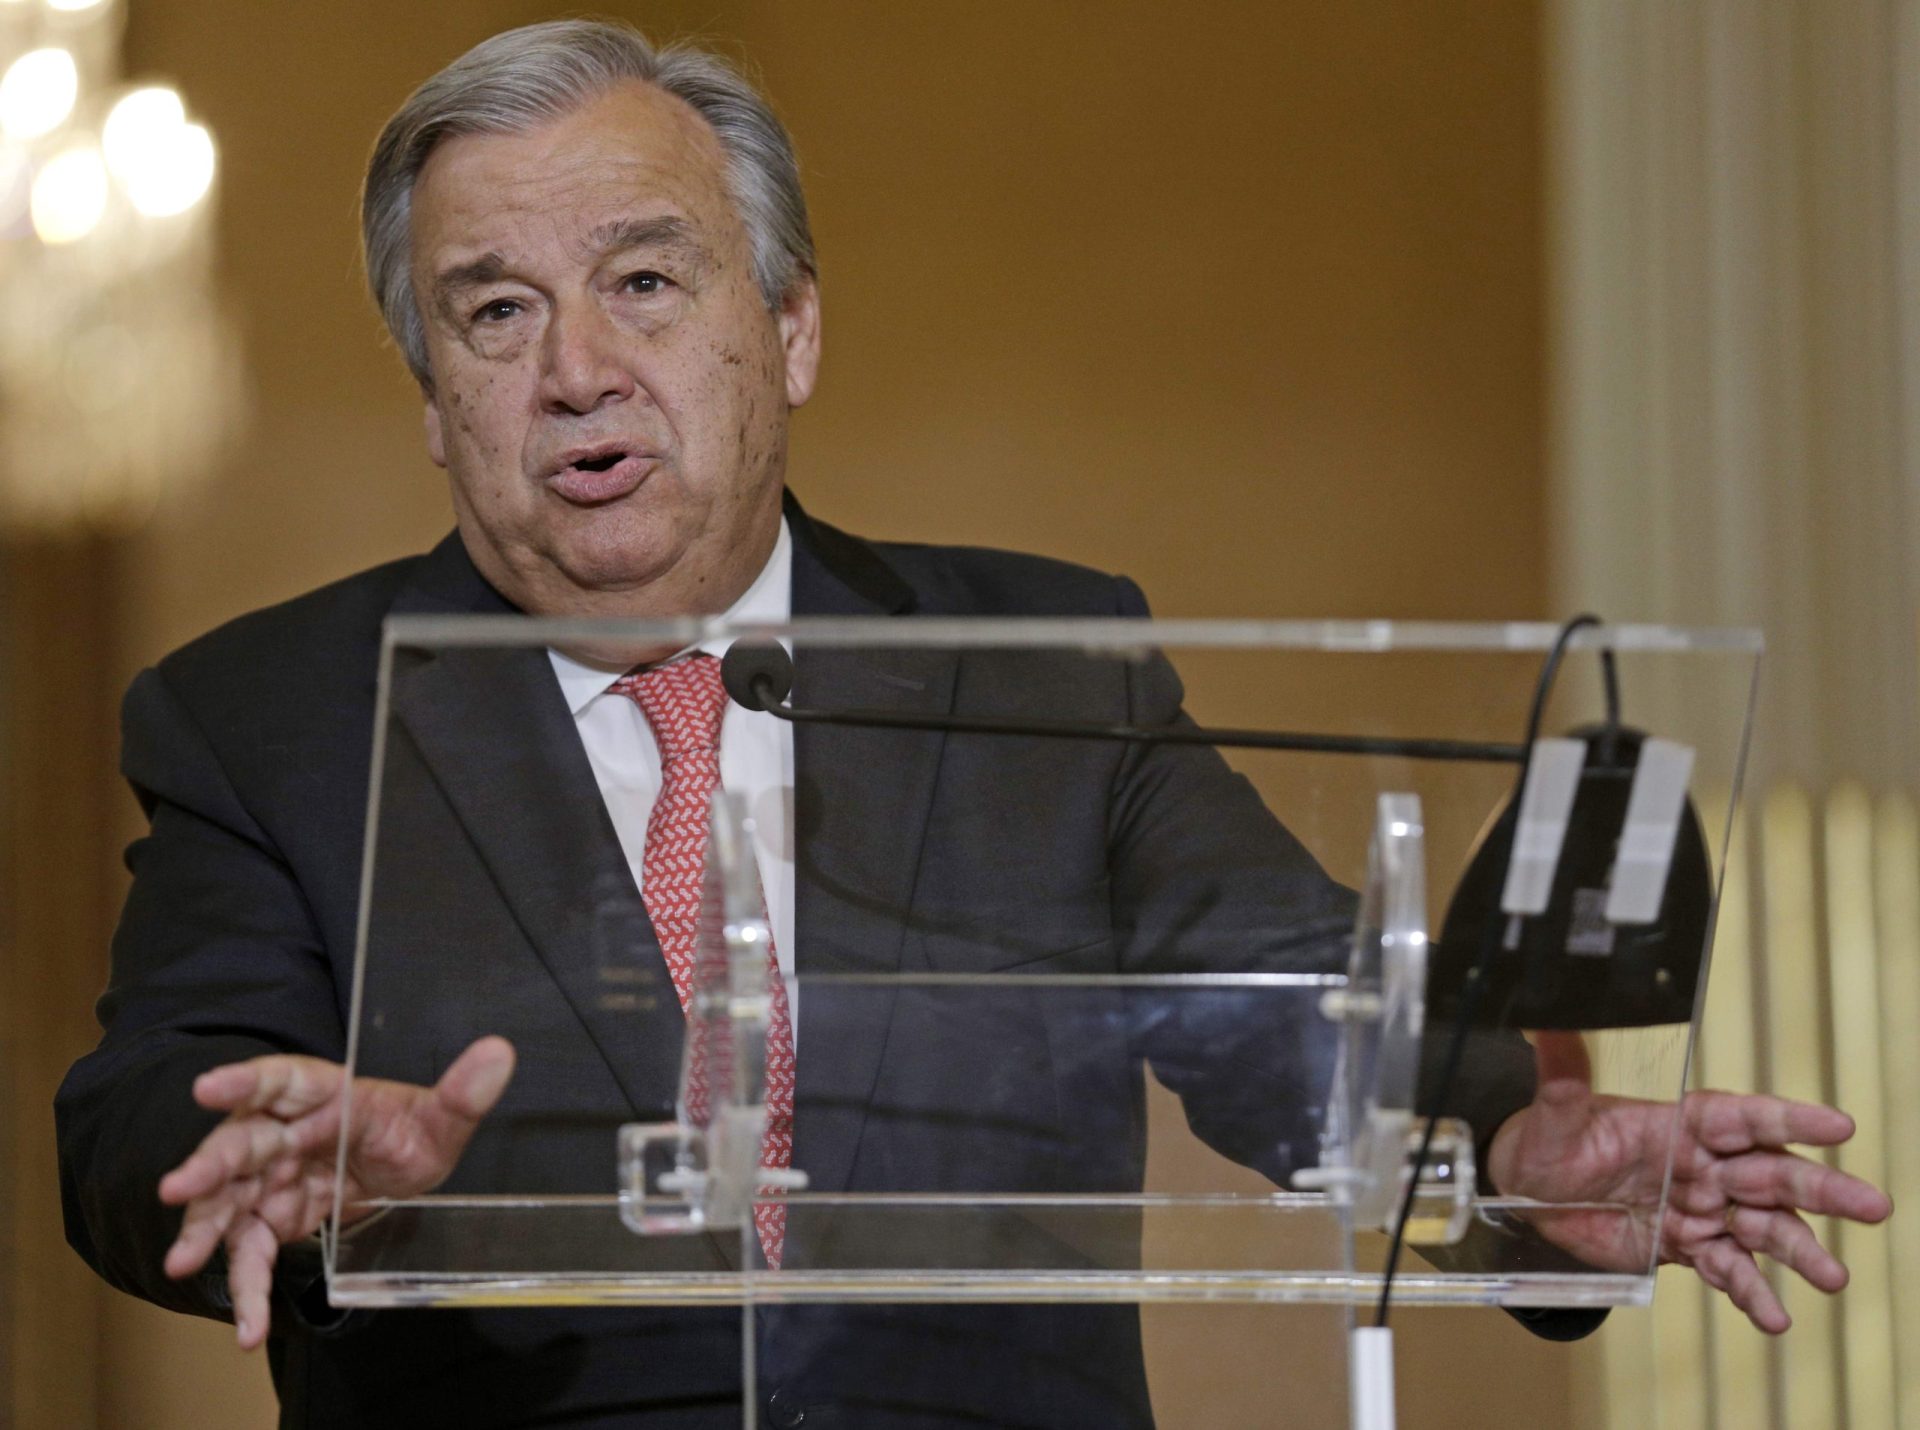 Os recados de Guterres no primeiro discurso como secretário-geral da ONU [vídeo]